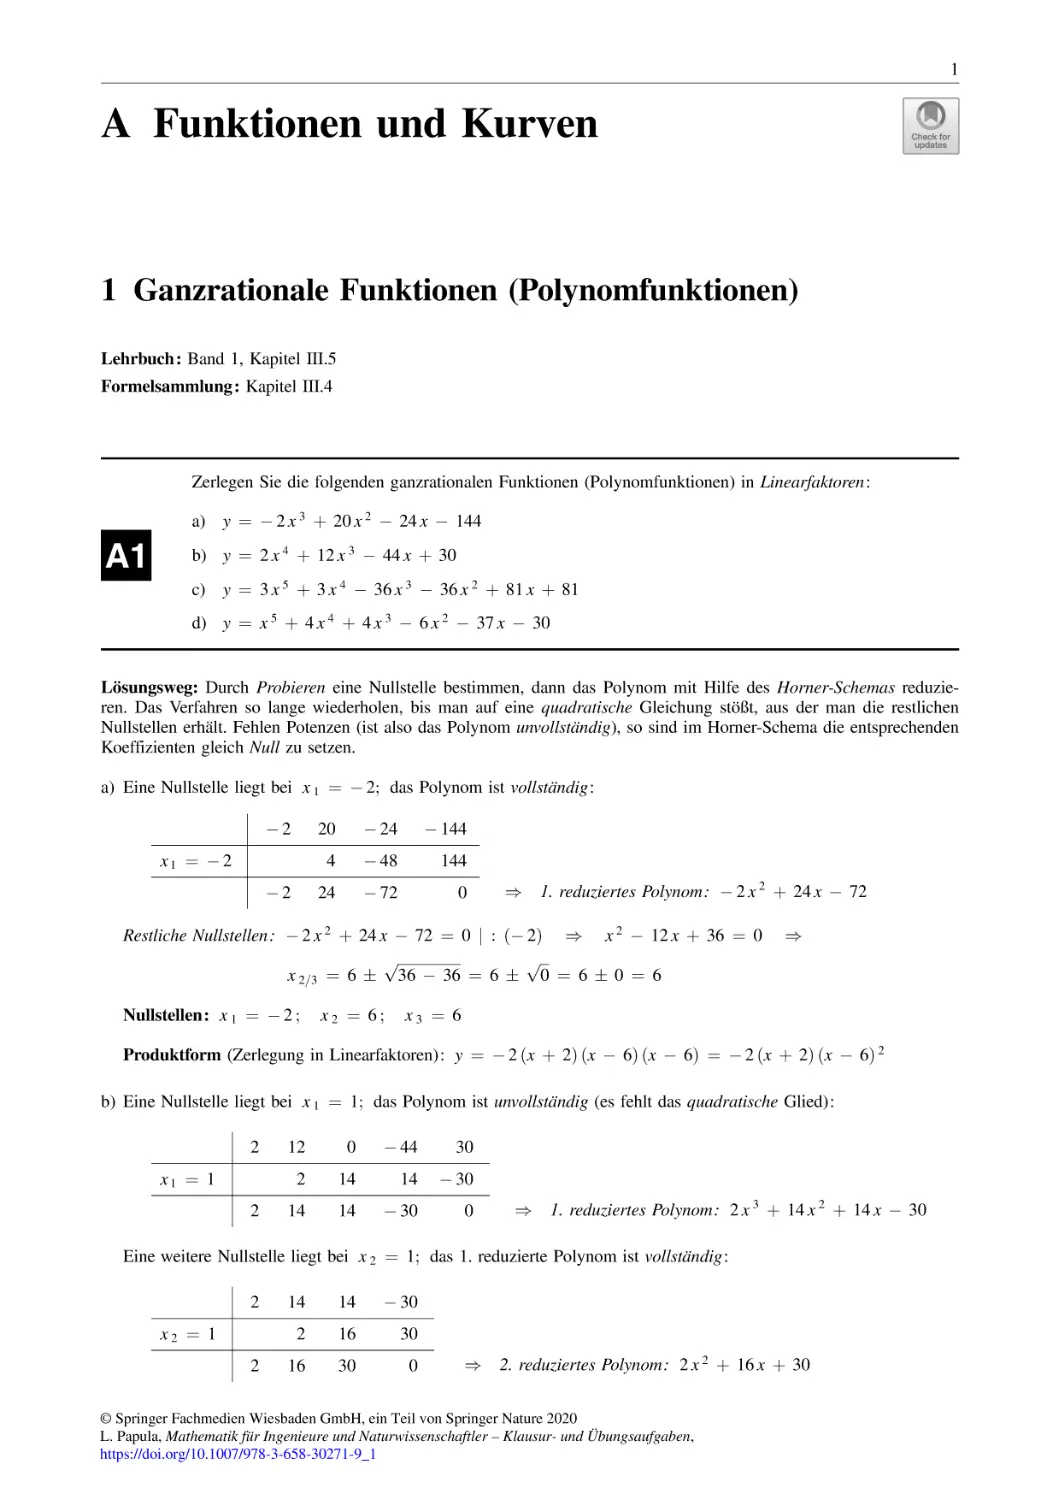 A Funktionen und Kurven
1 Ganzrationale Funktionen (Polynomfunktionen)